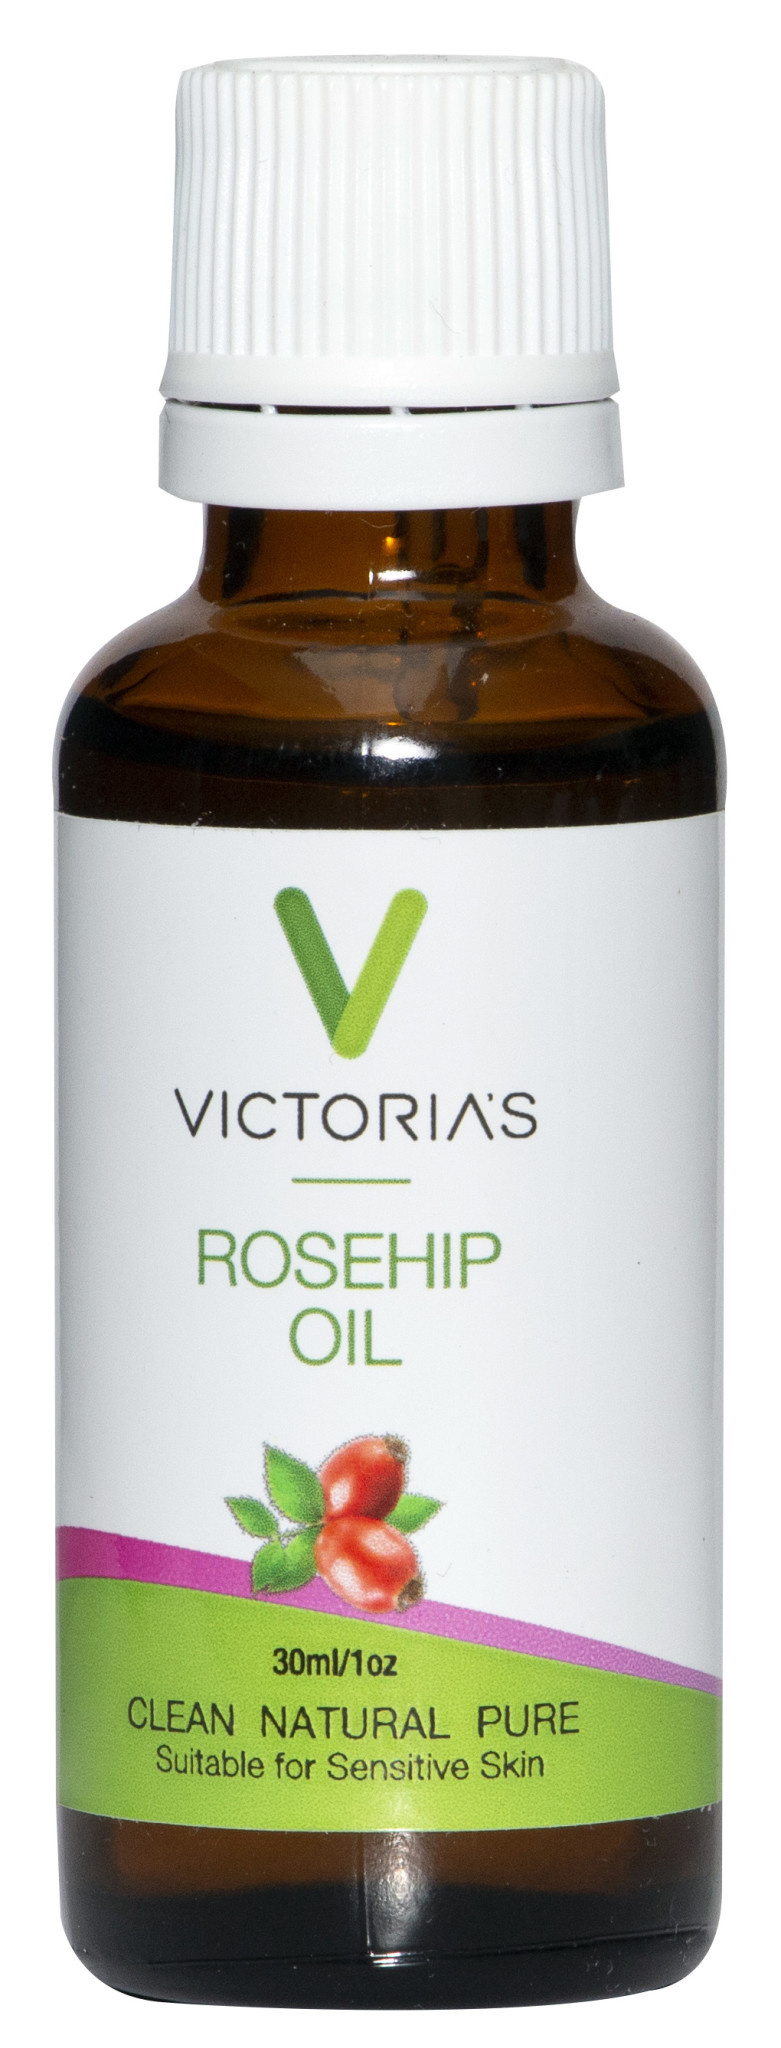 Victoria's - Rosehip Oil - 30ml